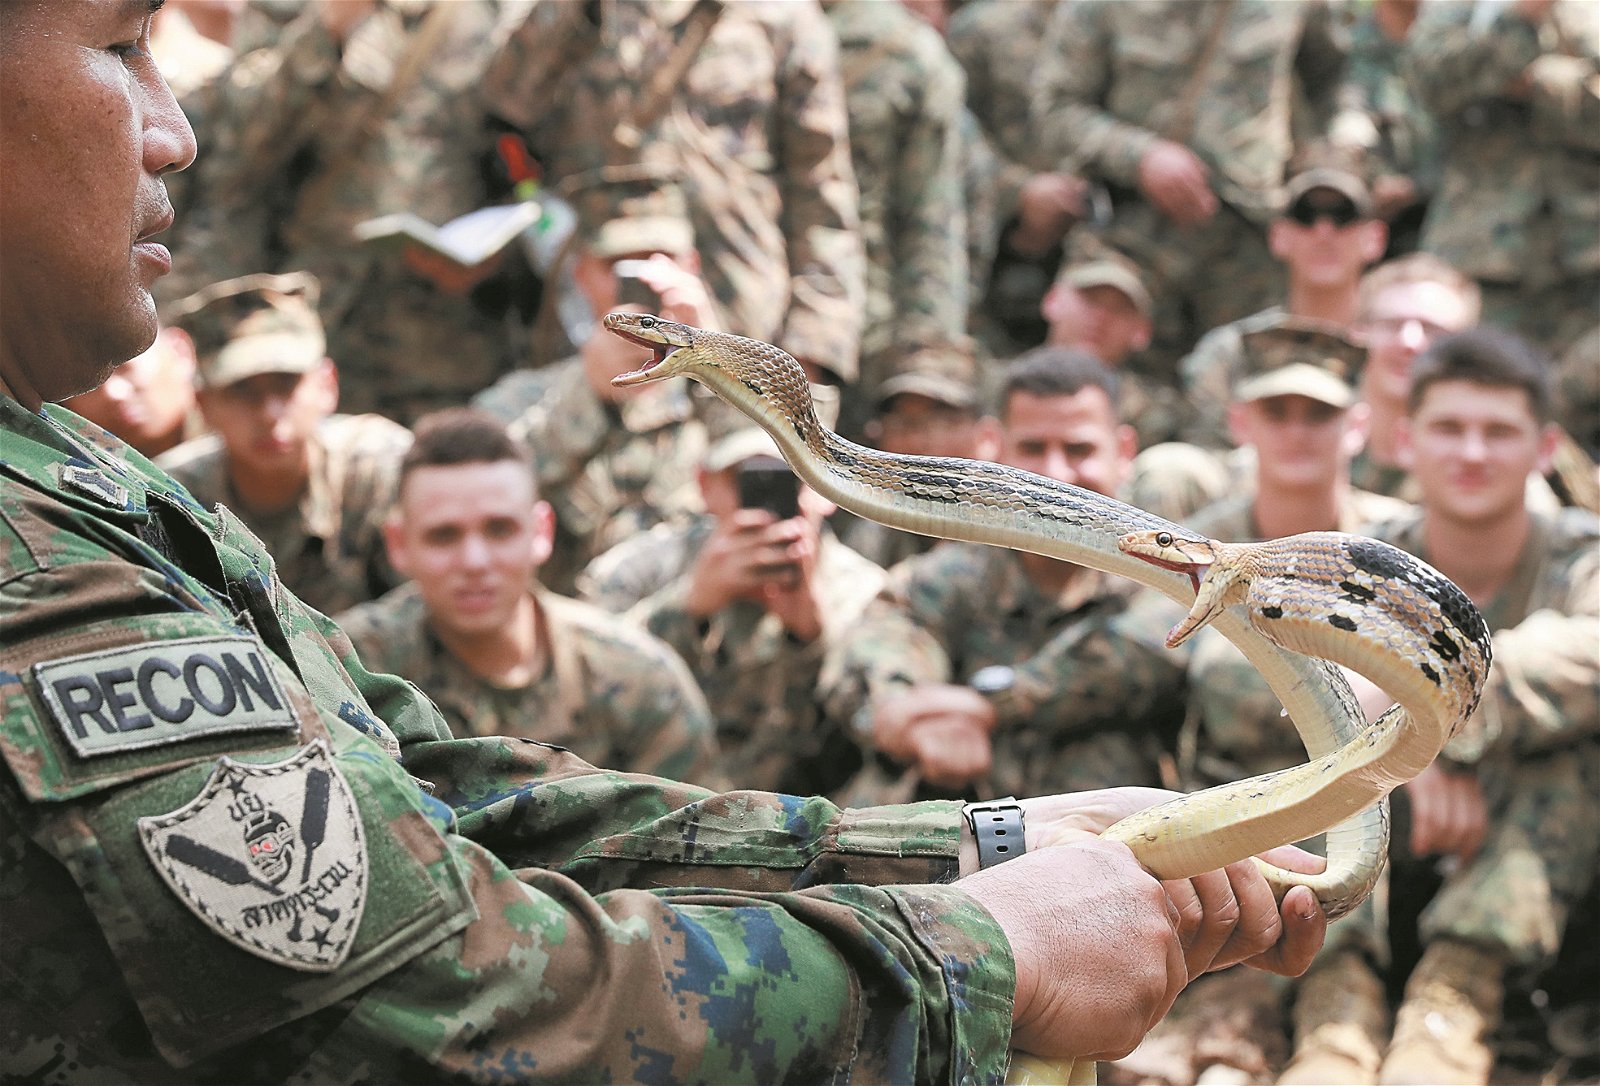 “金色眼镜蛇”联合军演进行逾30年， 已进展至亚洲区最具规模的军演。一名泰 国皇家海军陆战队士兵，演示徒手抓蛇， 其手中的两只眼镜蛇正弓起身子作势反 扑，场面触目惊心。